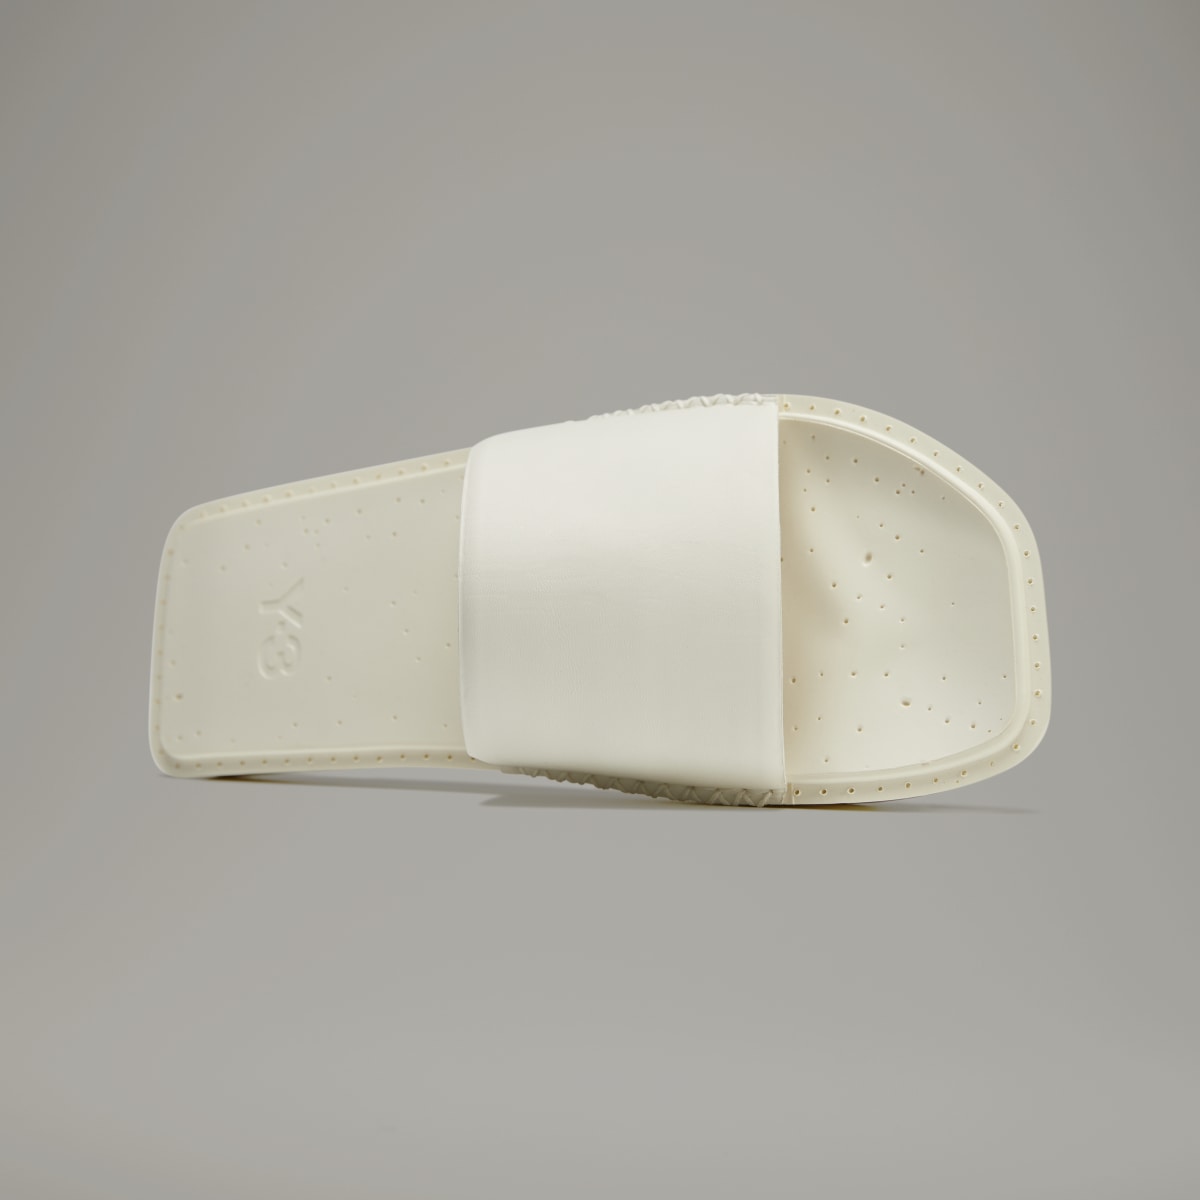 Adidas Sandale de plage Y-3. 4